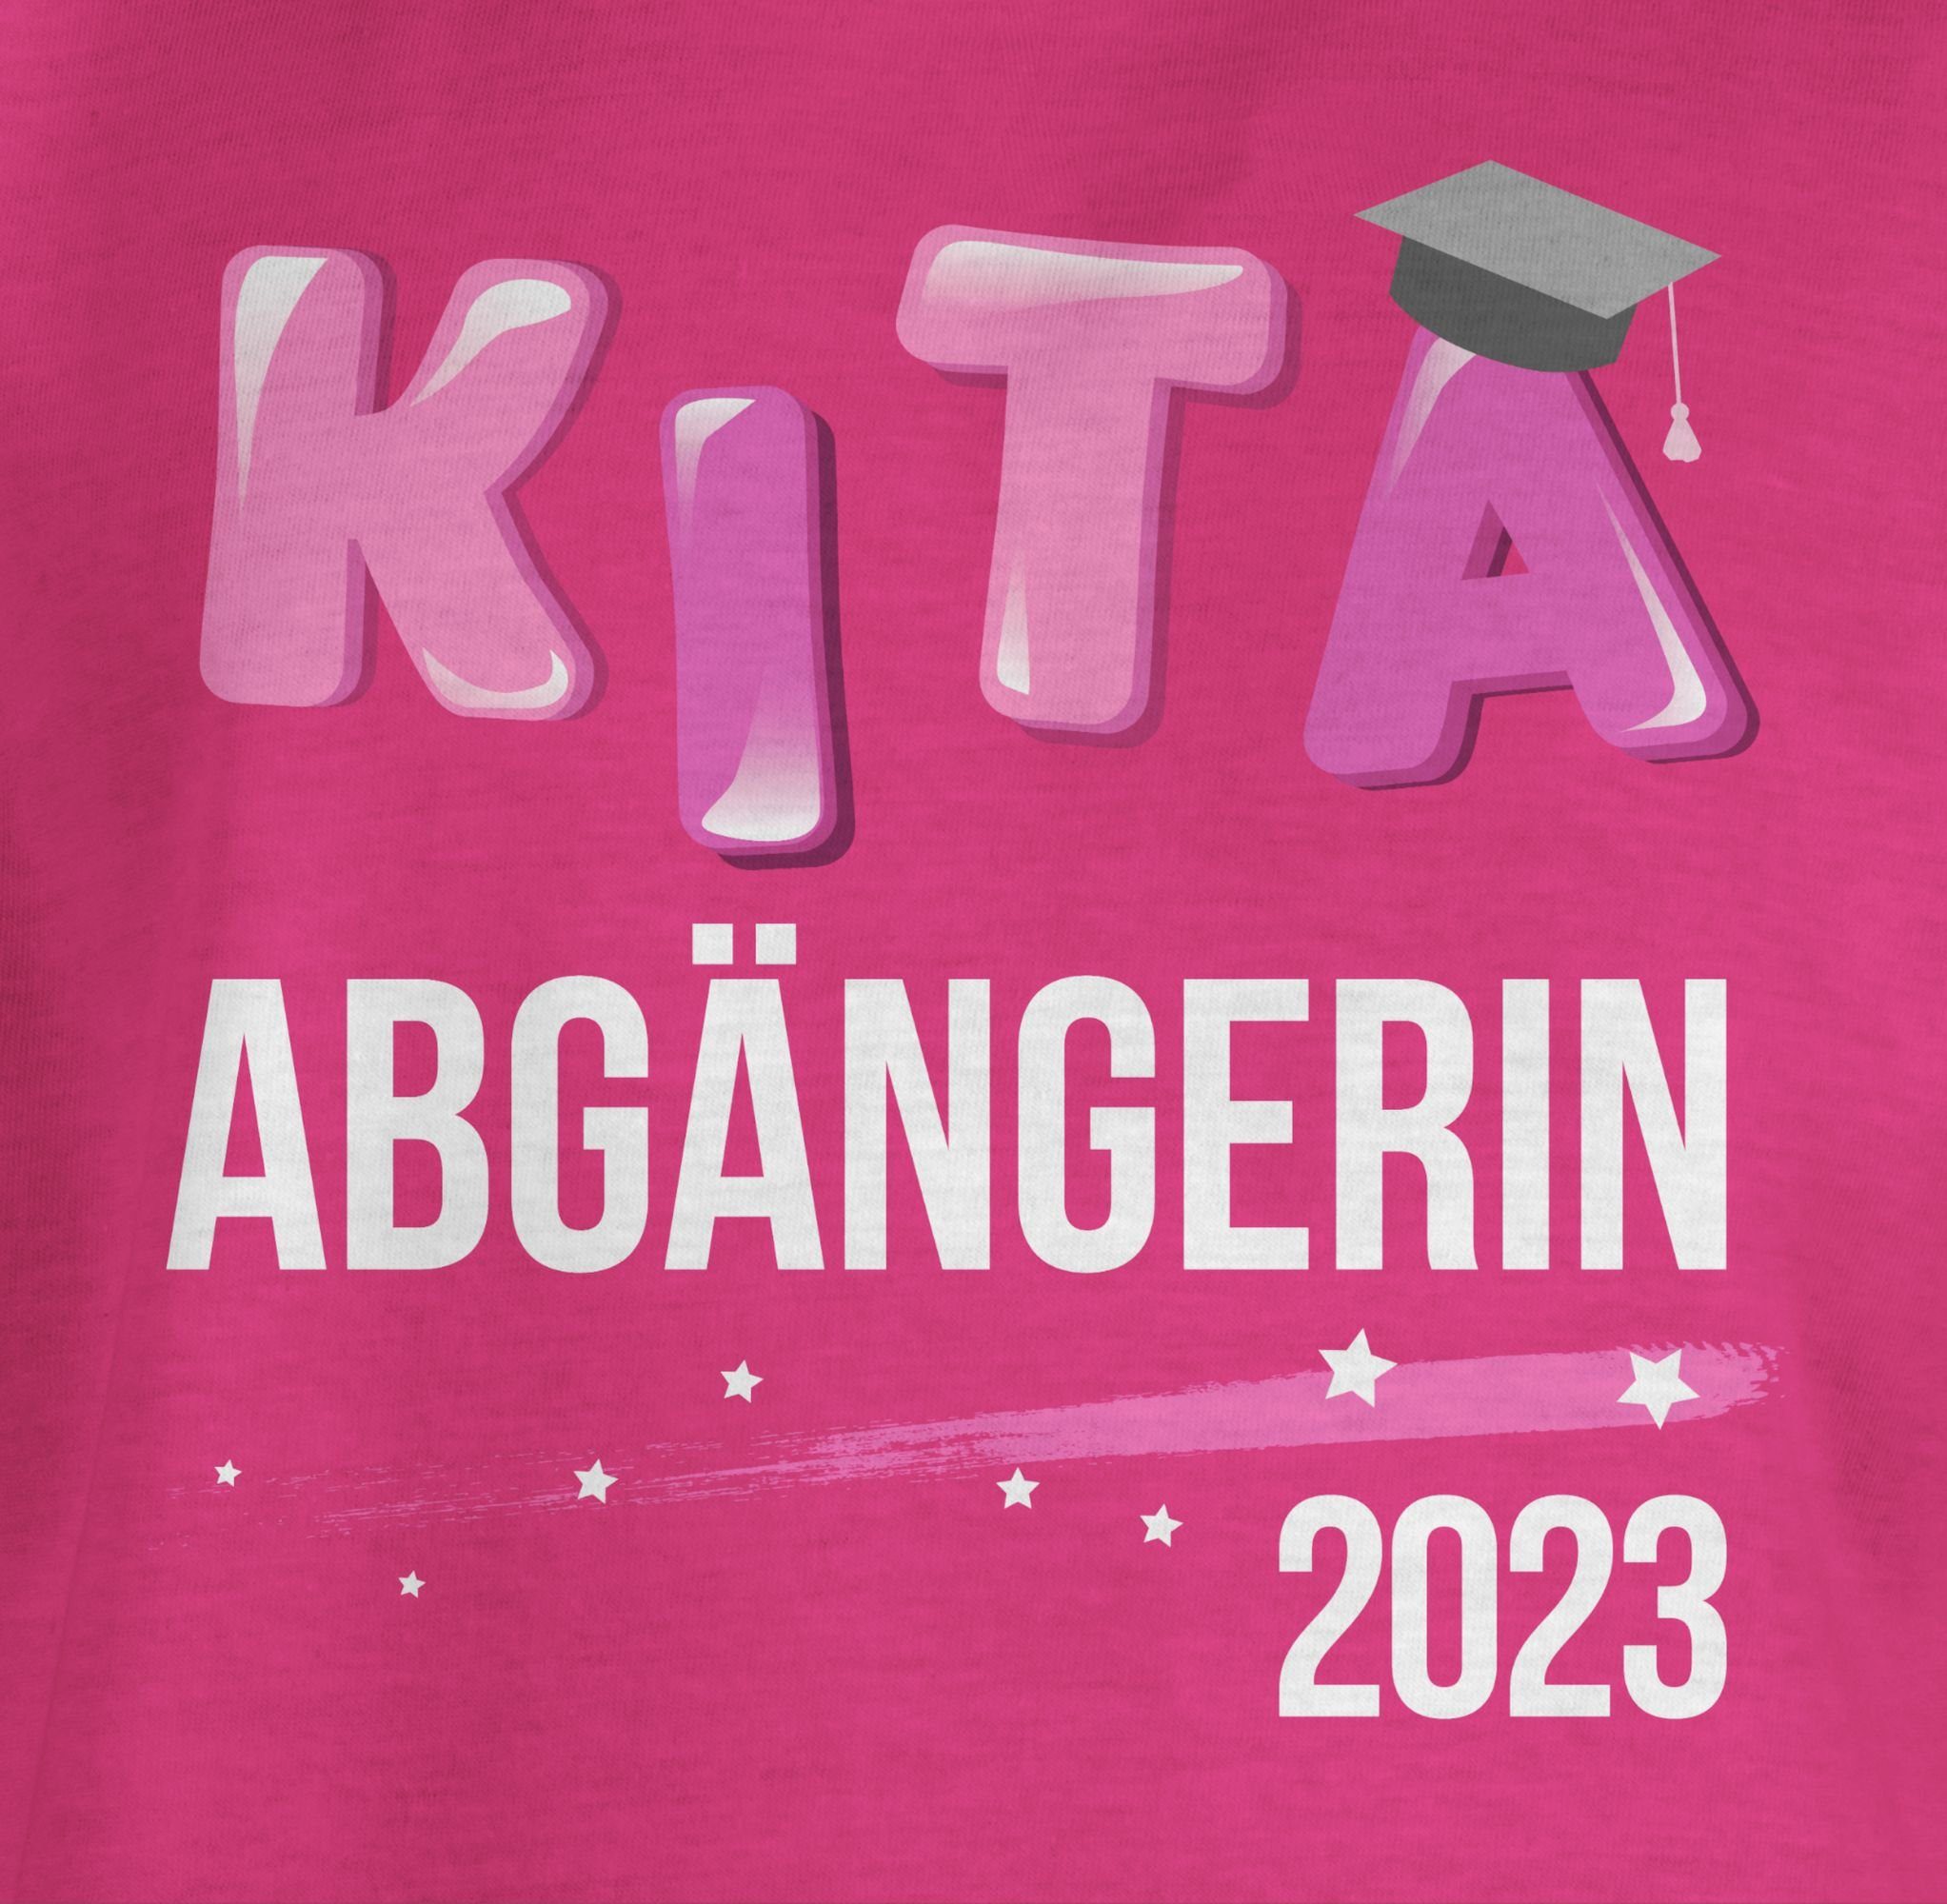 2 2023 Einschulung T-Shirt Shirtracer Abgängerin Mädchen Kita Fuchsia